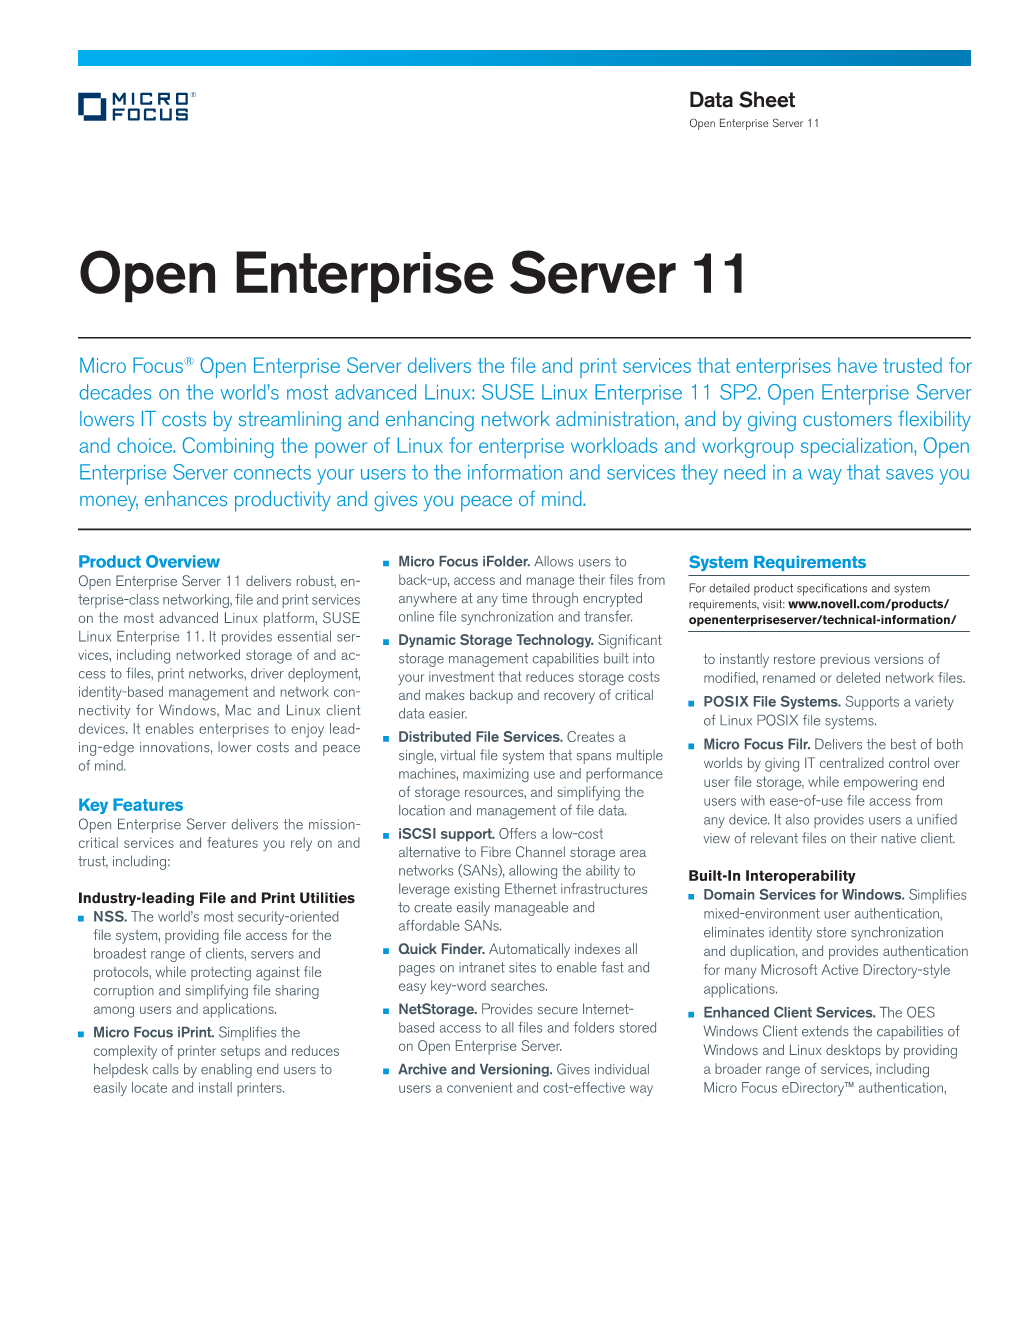 Open Enterprise Server 11